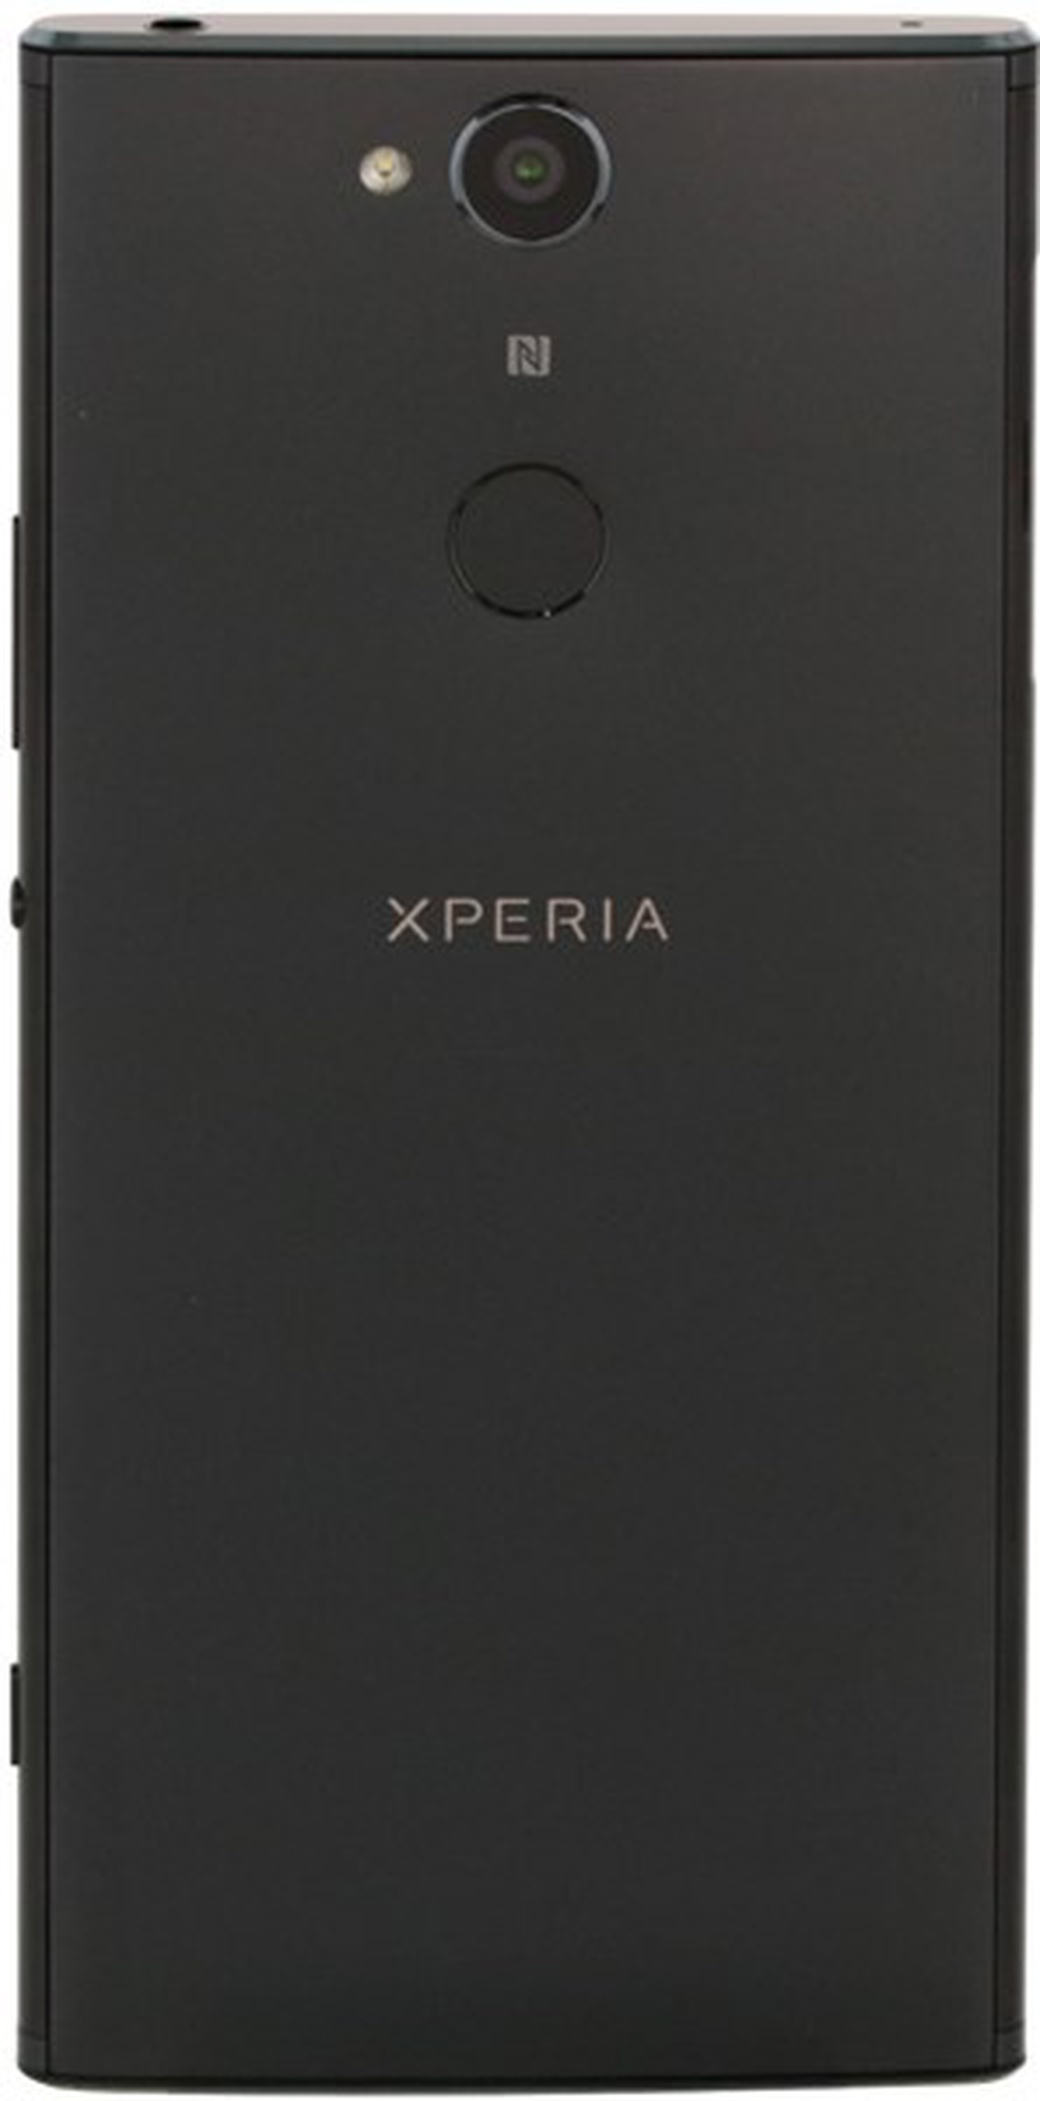 H4113 xperia. Sony Xperia xa2. Sony Xperia xa2 Dual. Sony Xperia h4113. Sony Xperia xa2 Dual h4113.